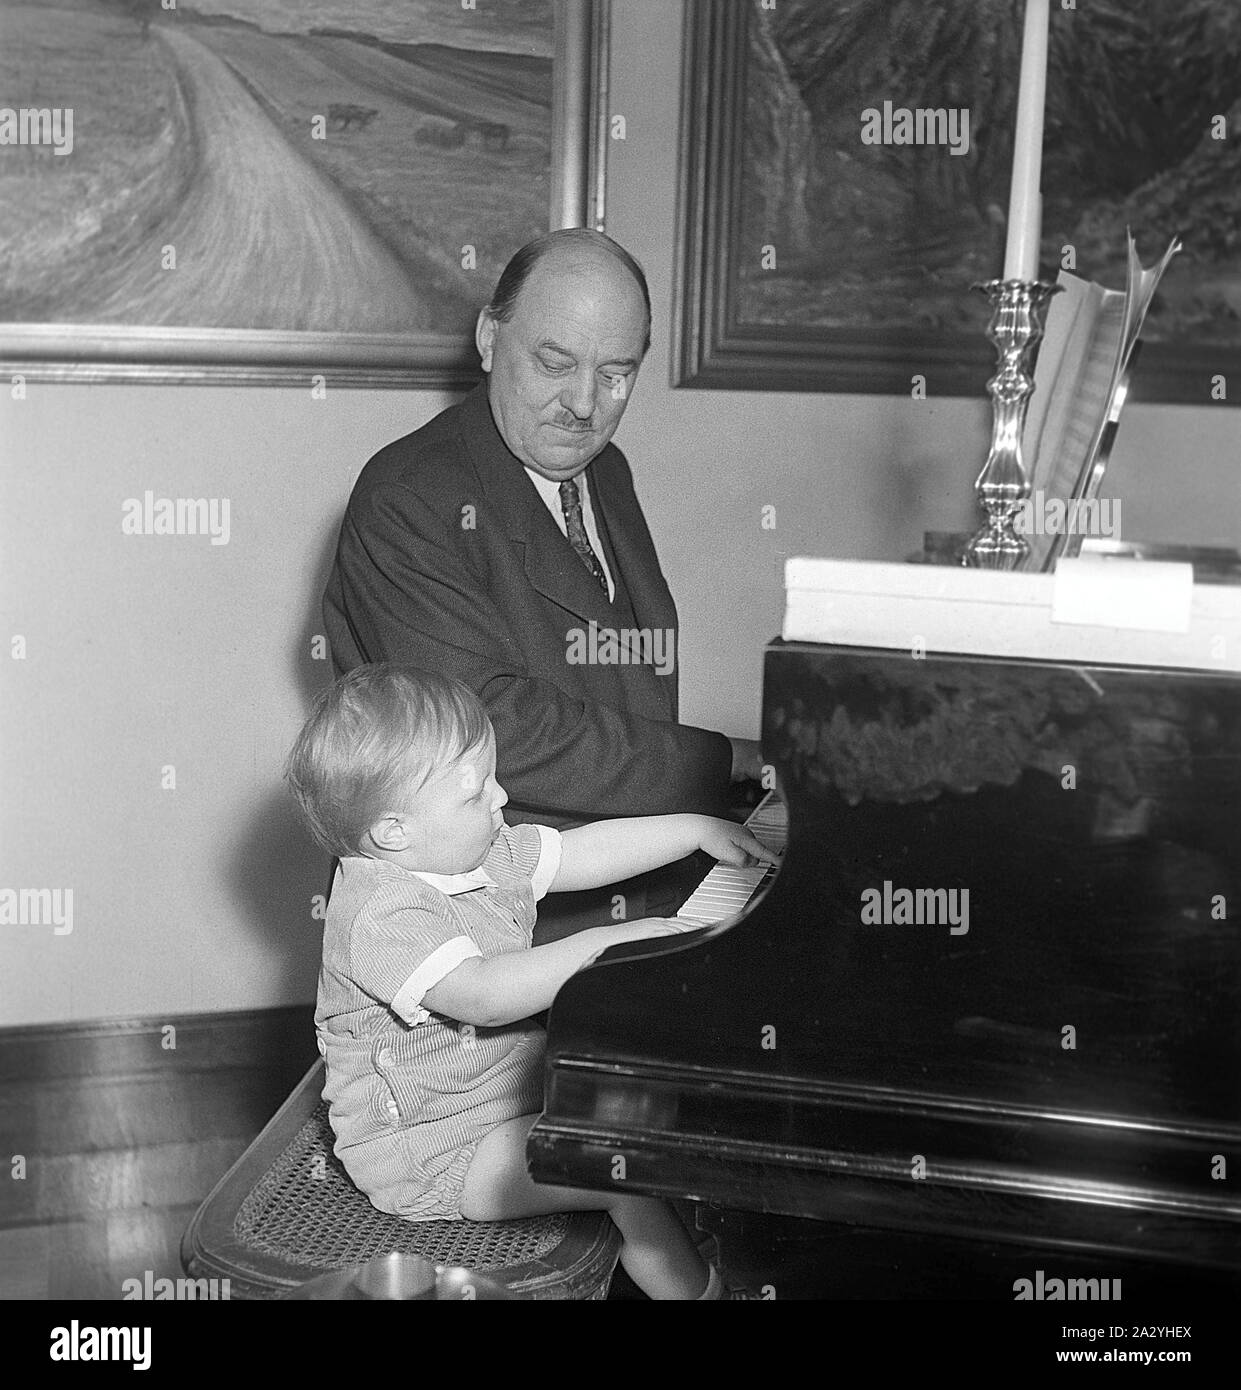 Due generazioni in un pianoforte a coda. Dispite la differenza di età essi guardano come arrivare insieme bene e forse anche di riprodurre la stessa melodia. La Svezia 1948. Kristoffersson ref AH10-1 Foto Stock